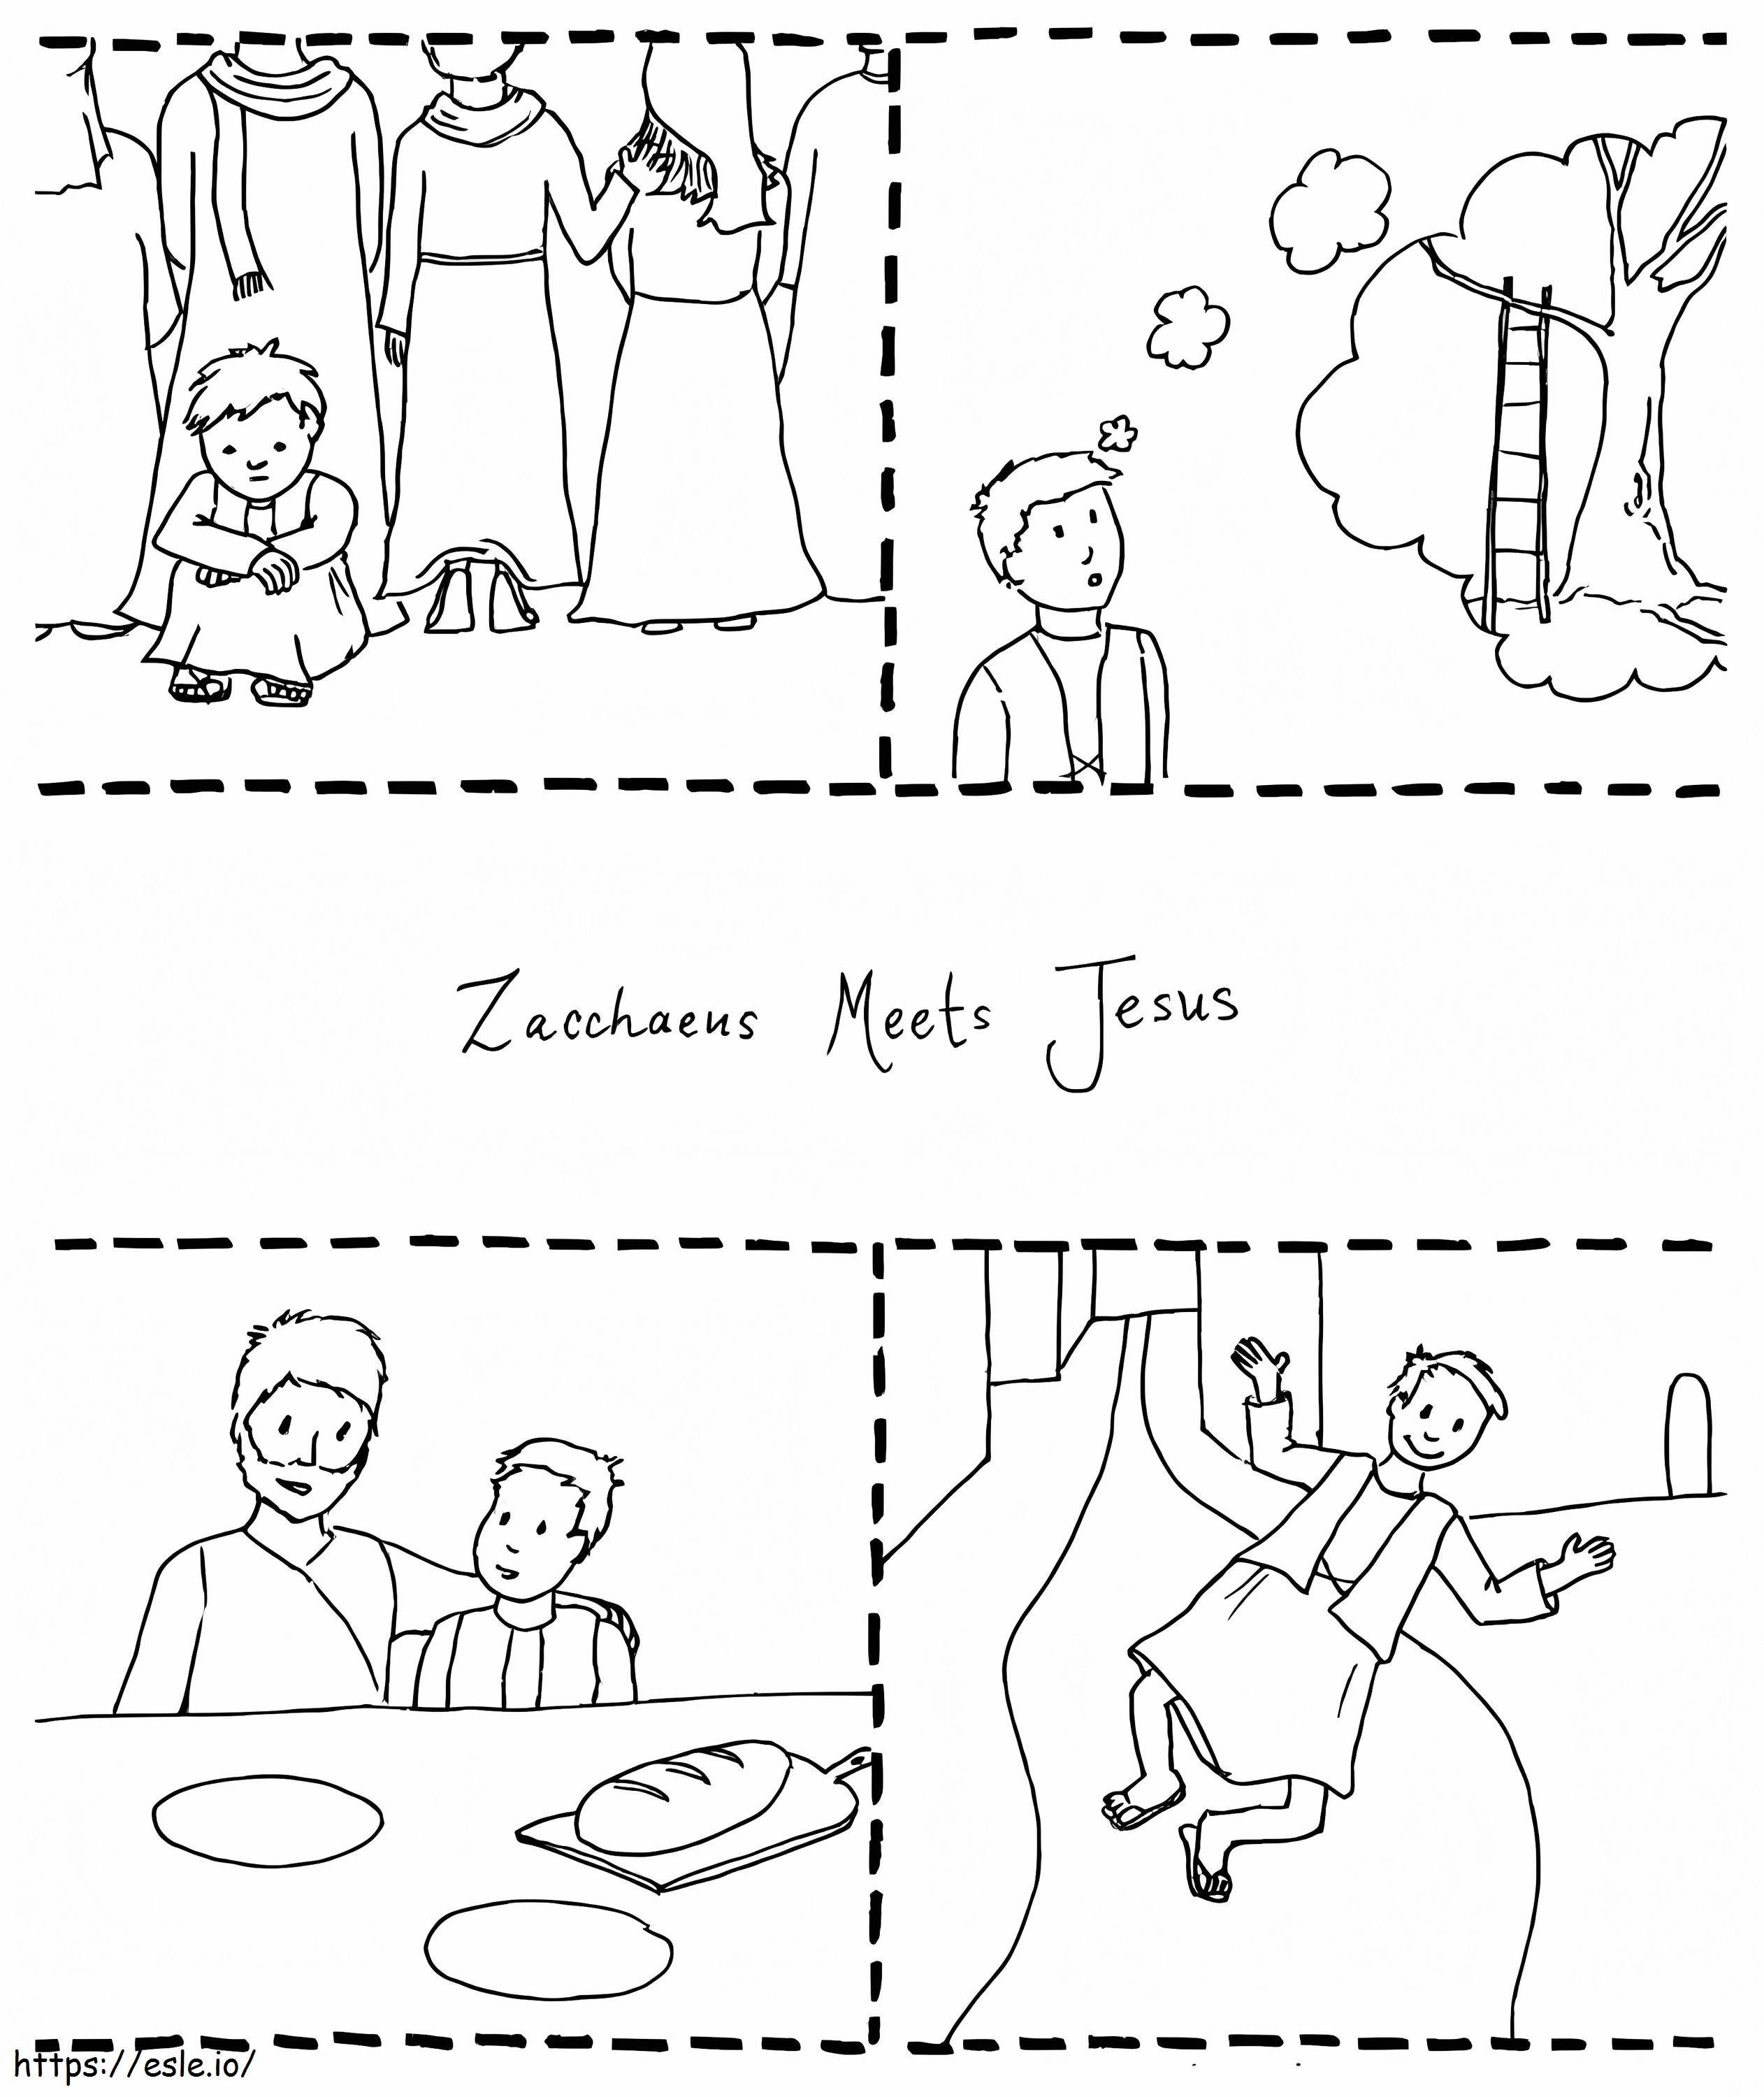 Jesus Meets Zacchaeus 1 coloring page